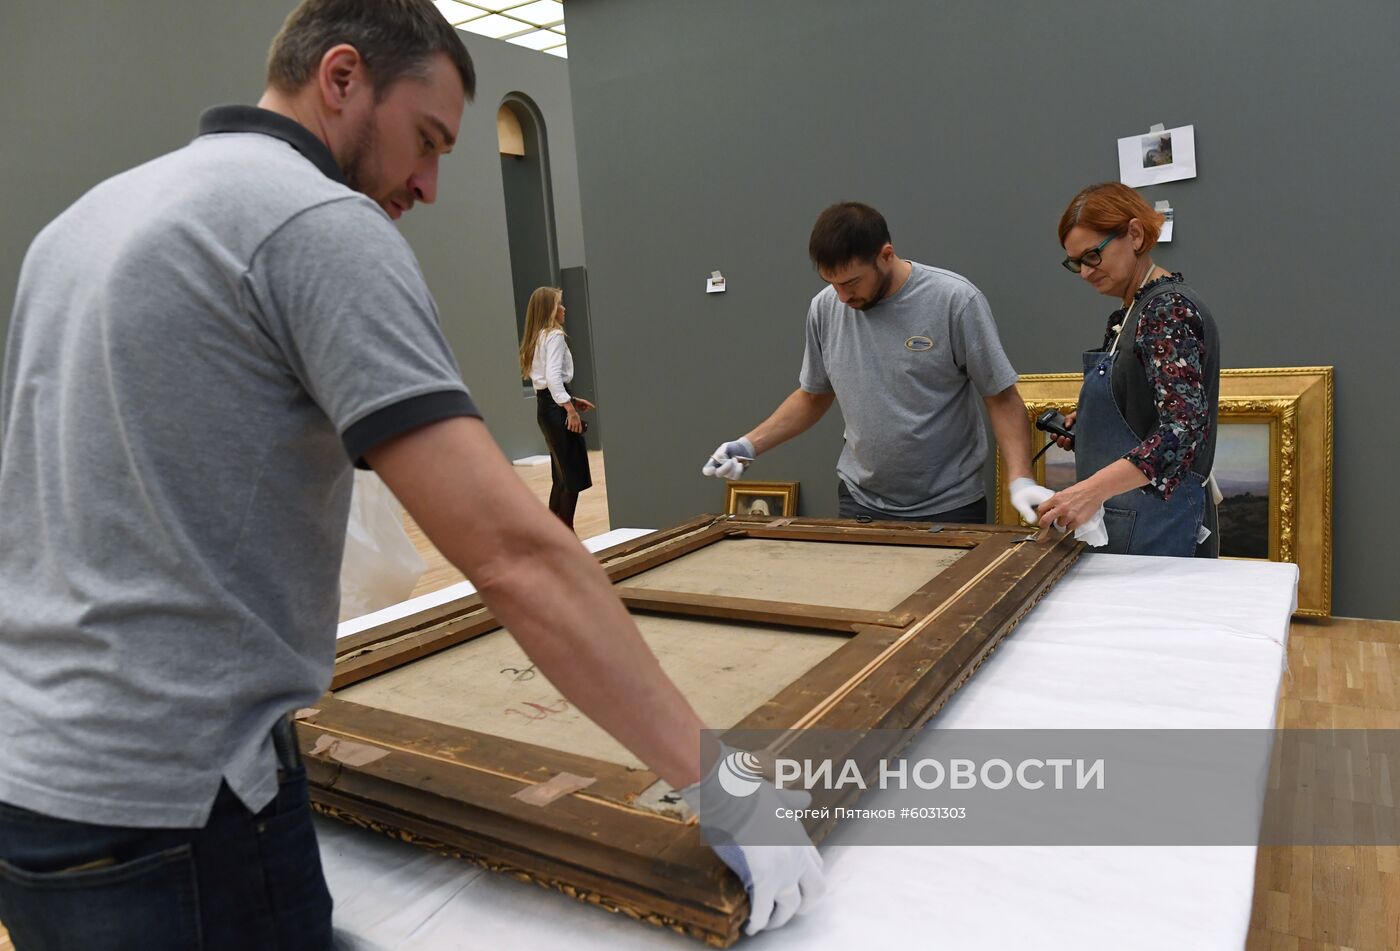 Подготовка к открытию выставки Василия Поленова в Третьяковской галерее